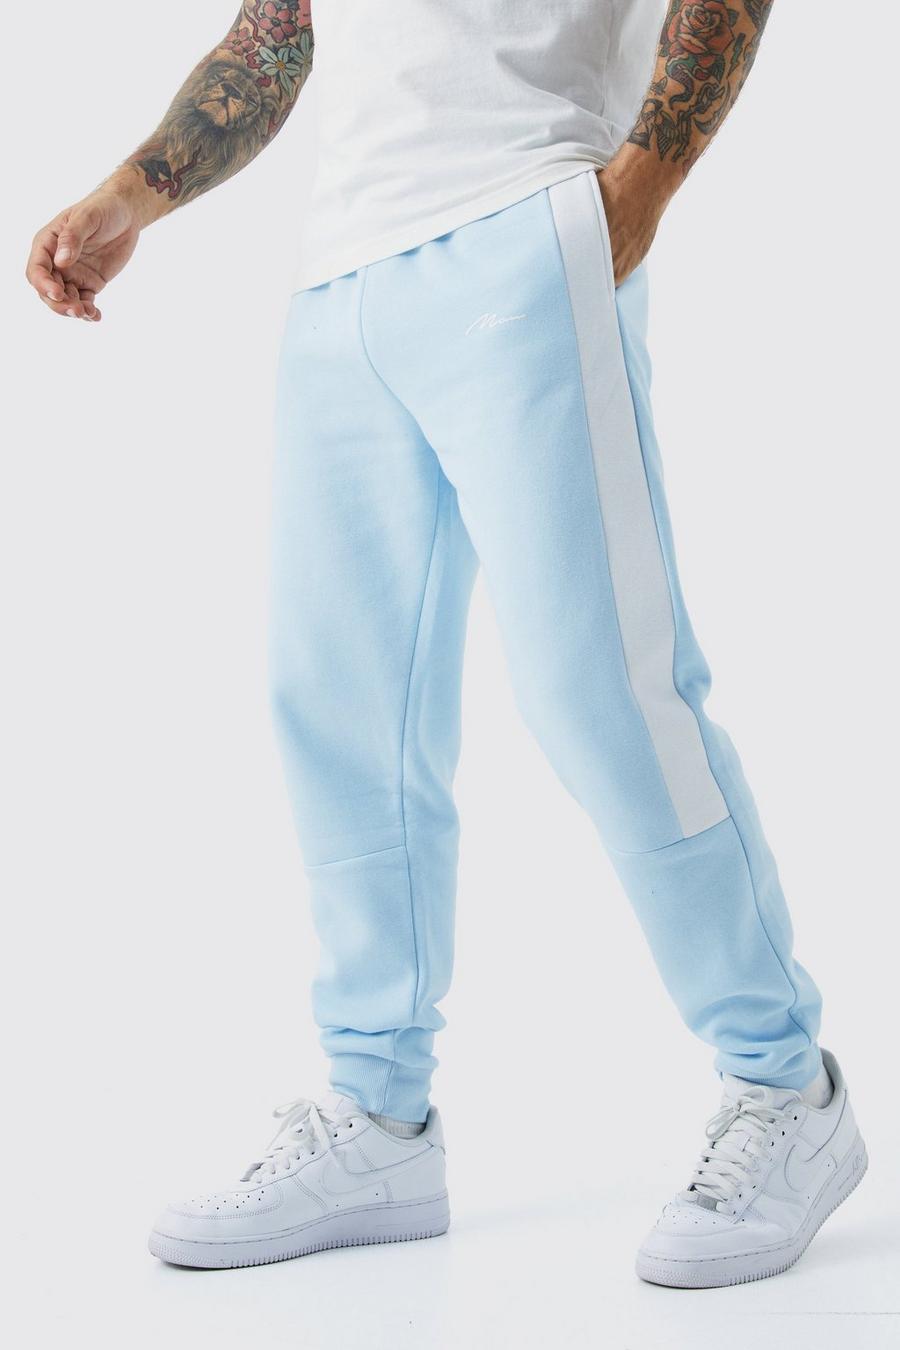 Pantalón deportivo con cinta y colores en bloque, Light blue